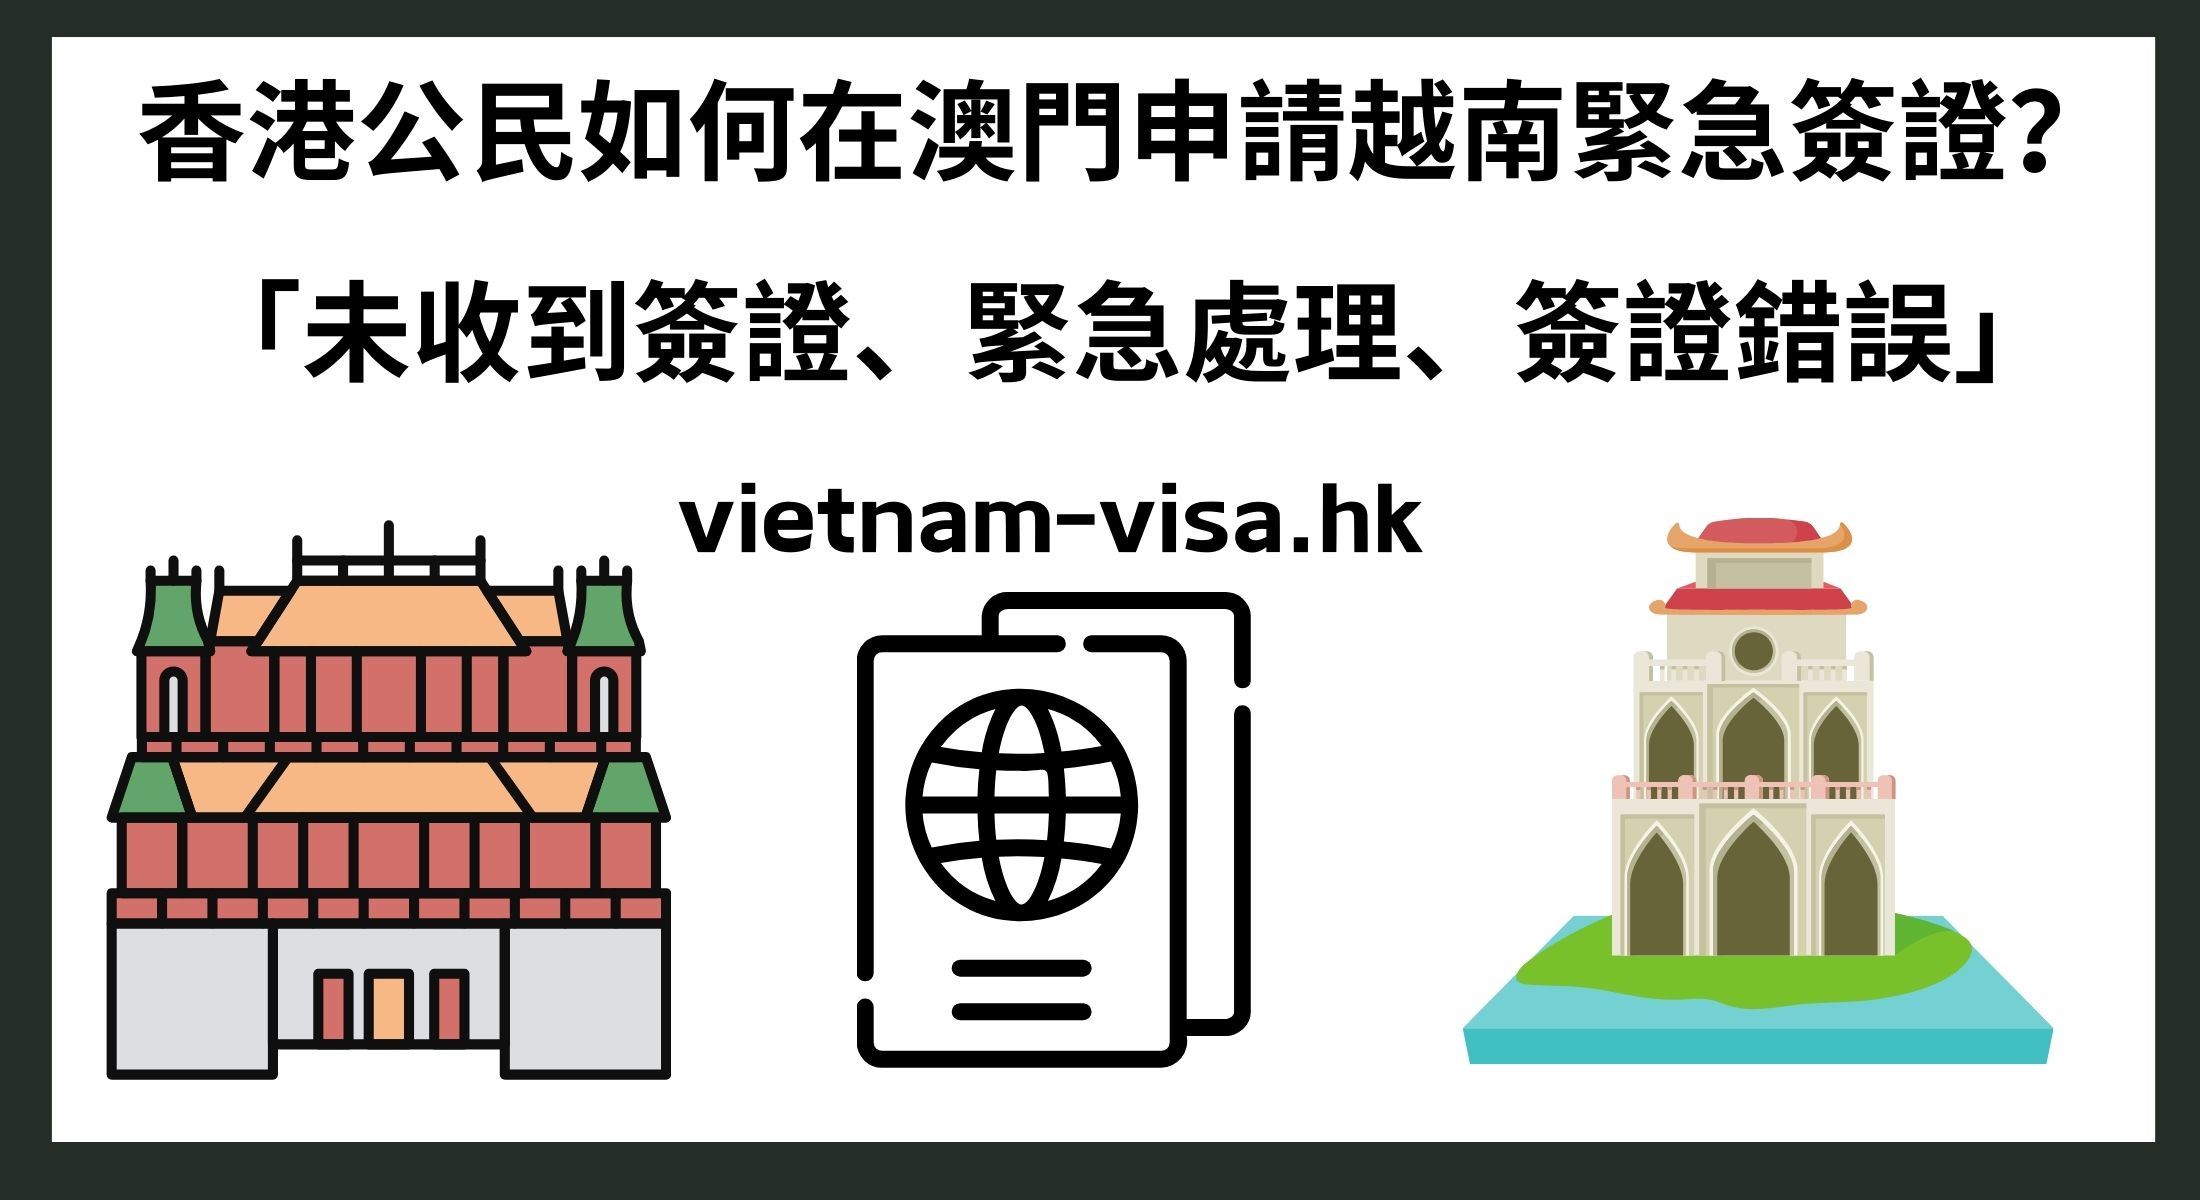 香港公民如何在澳門申請越南緊急簽證？ 「未收到簽證、緊急處理、簽證錯誤」